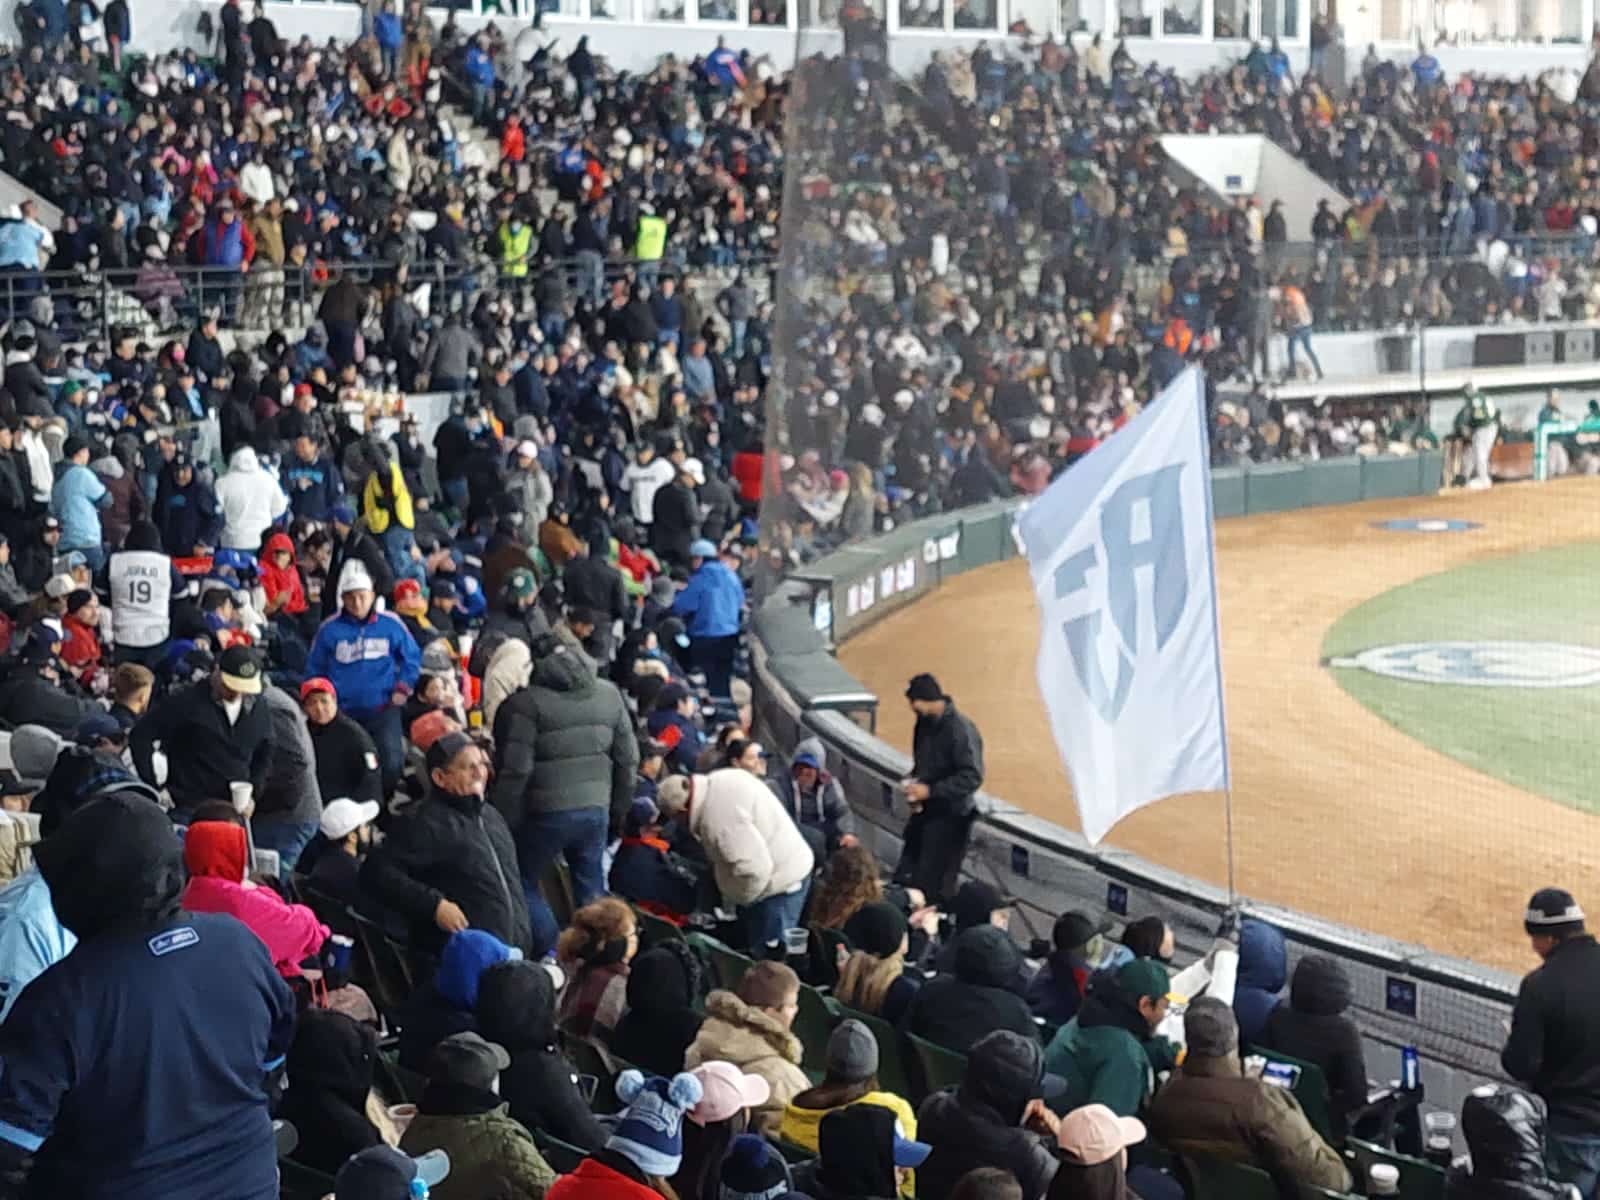 Vídeo: Ni siquiera el intenso frío frena la fiebre por el campeonato entre Cañeros y Algodoneros en Guasave